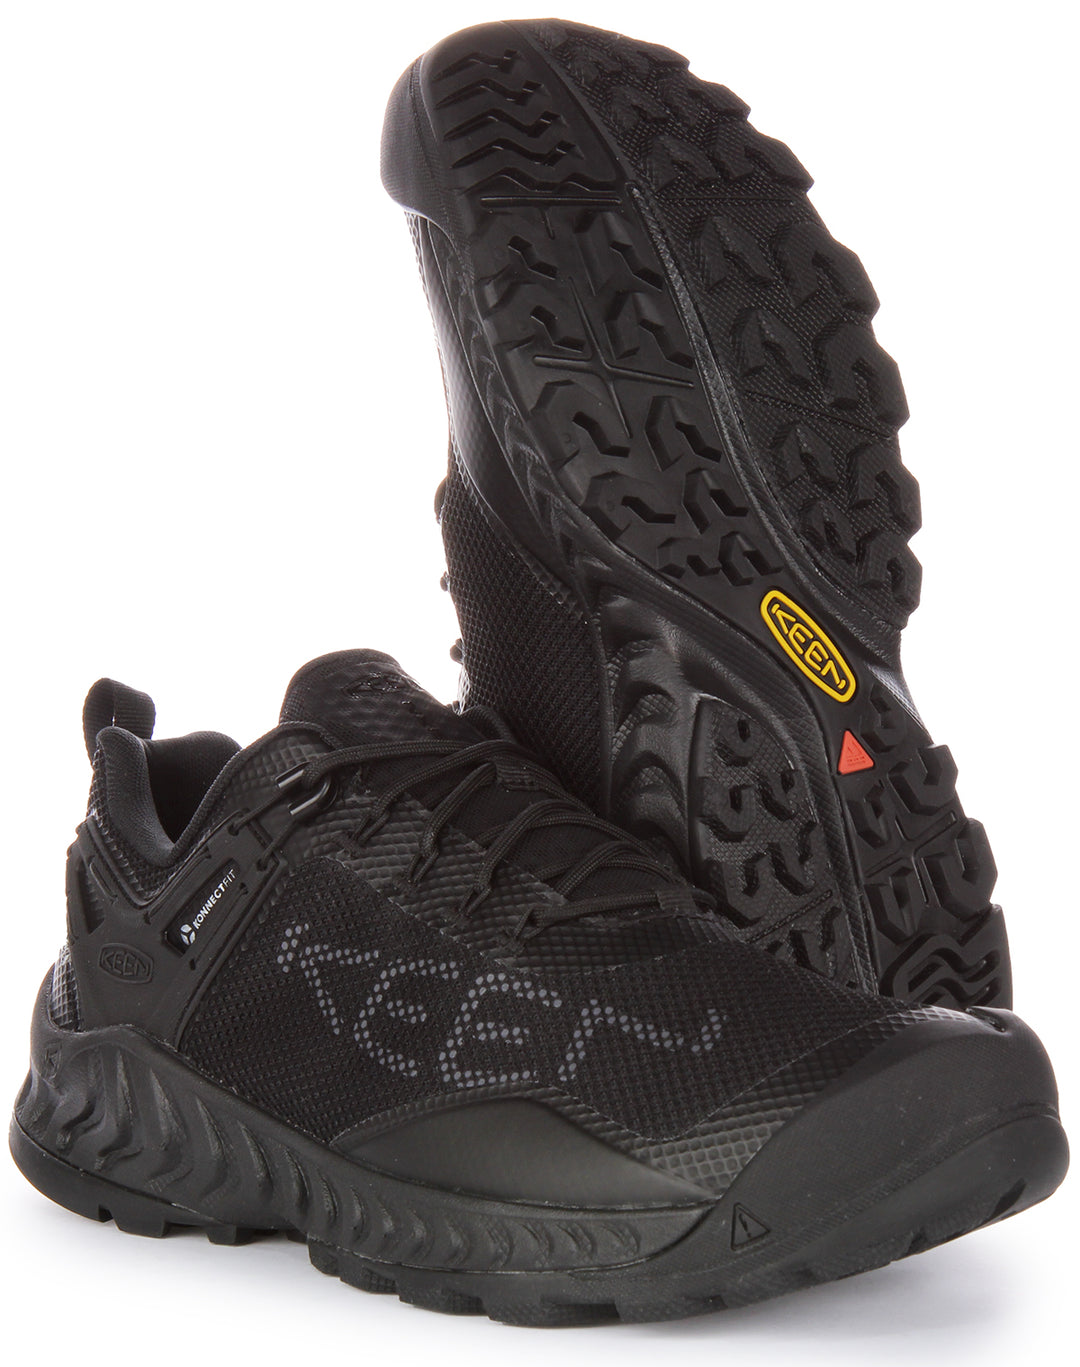 Keen Nxis Evo Chaussures de randonnée imperméables à lacets pour hommes en noir noir